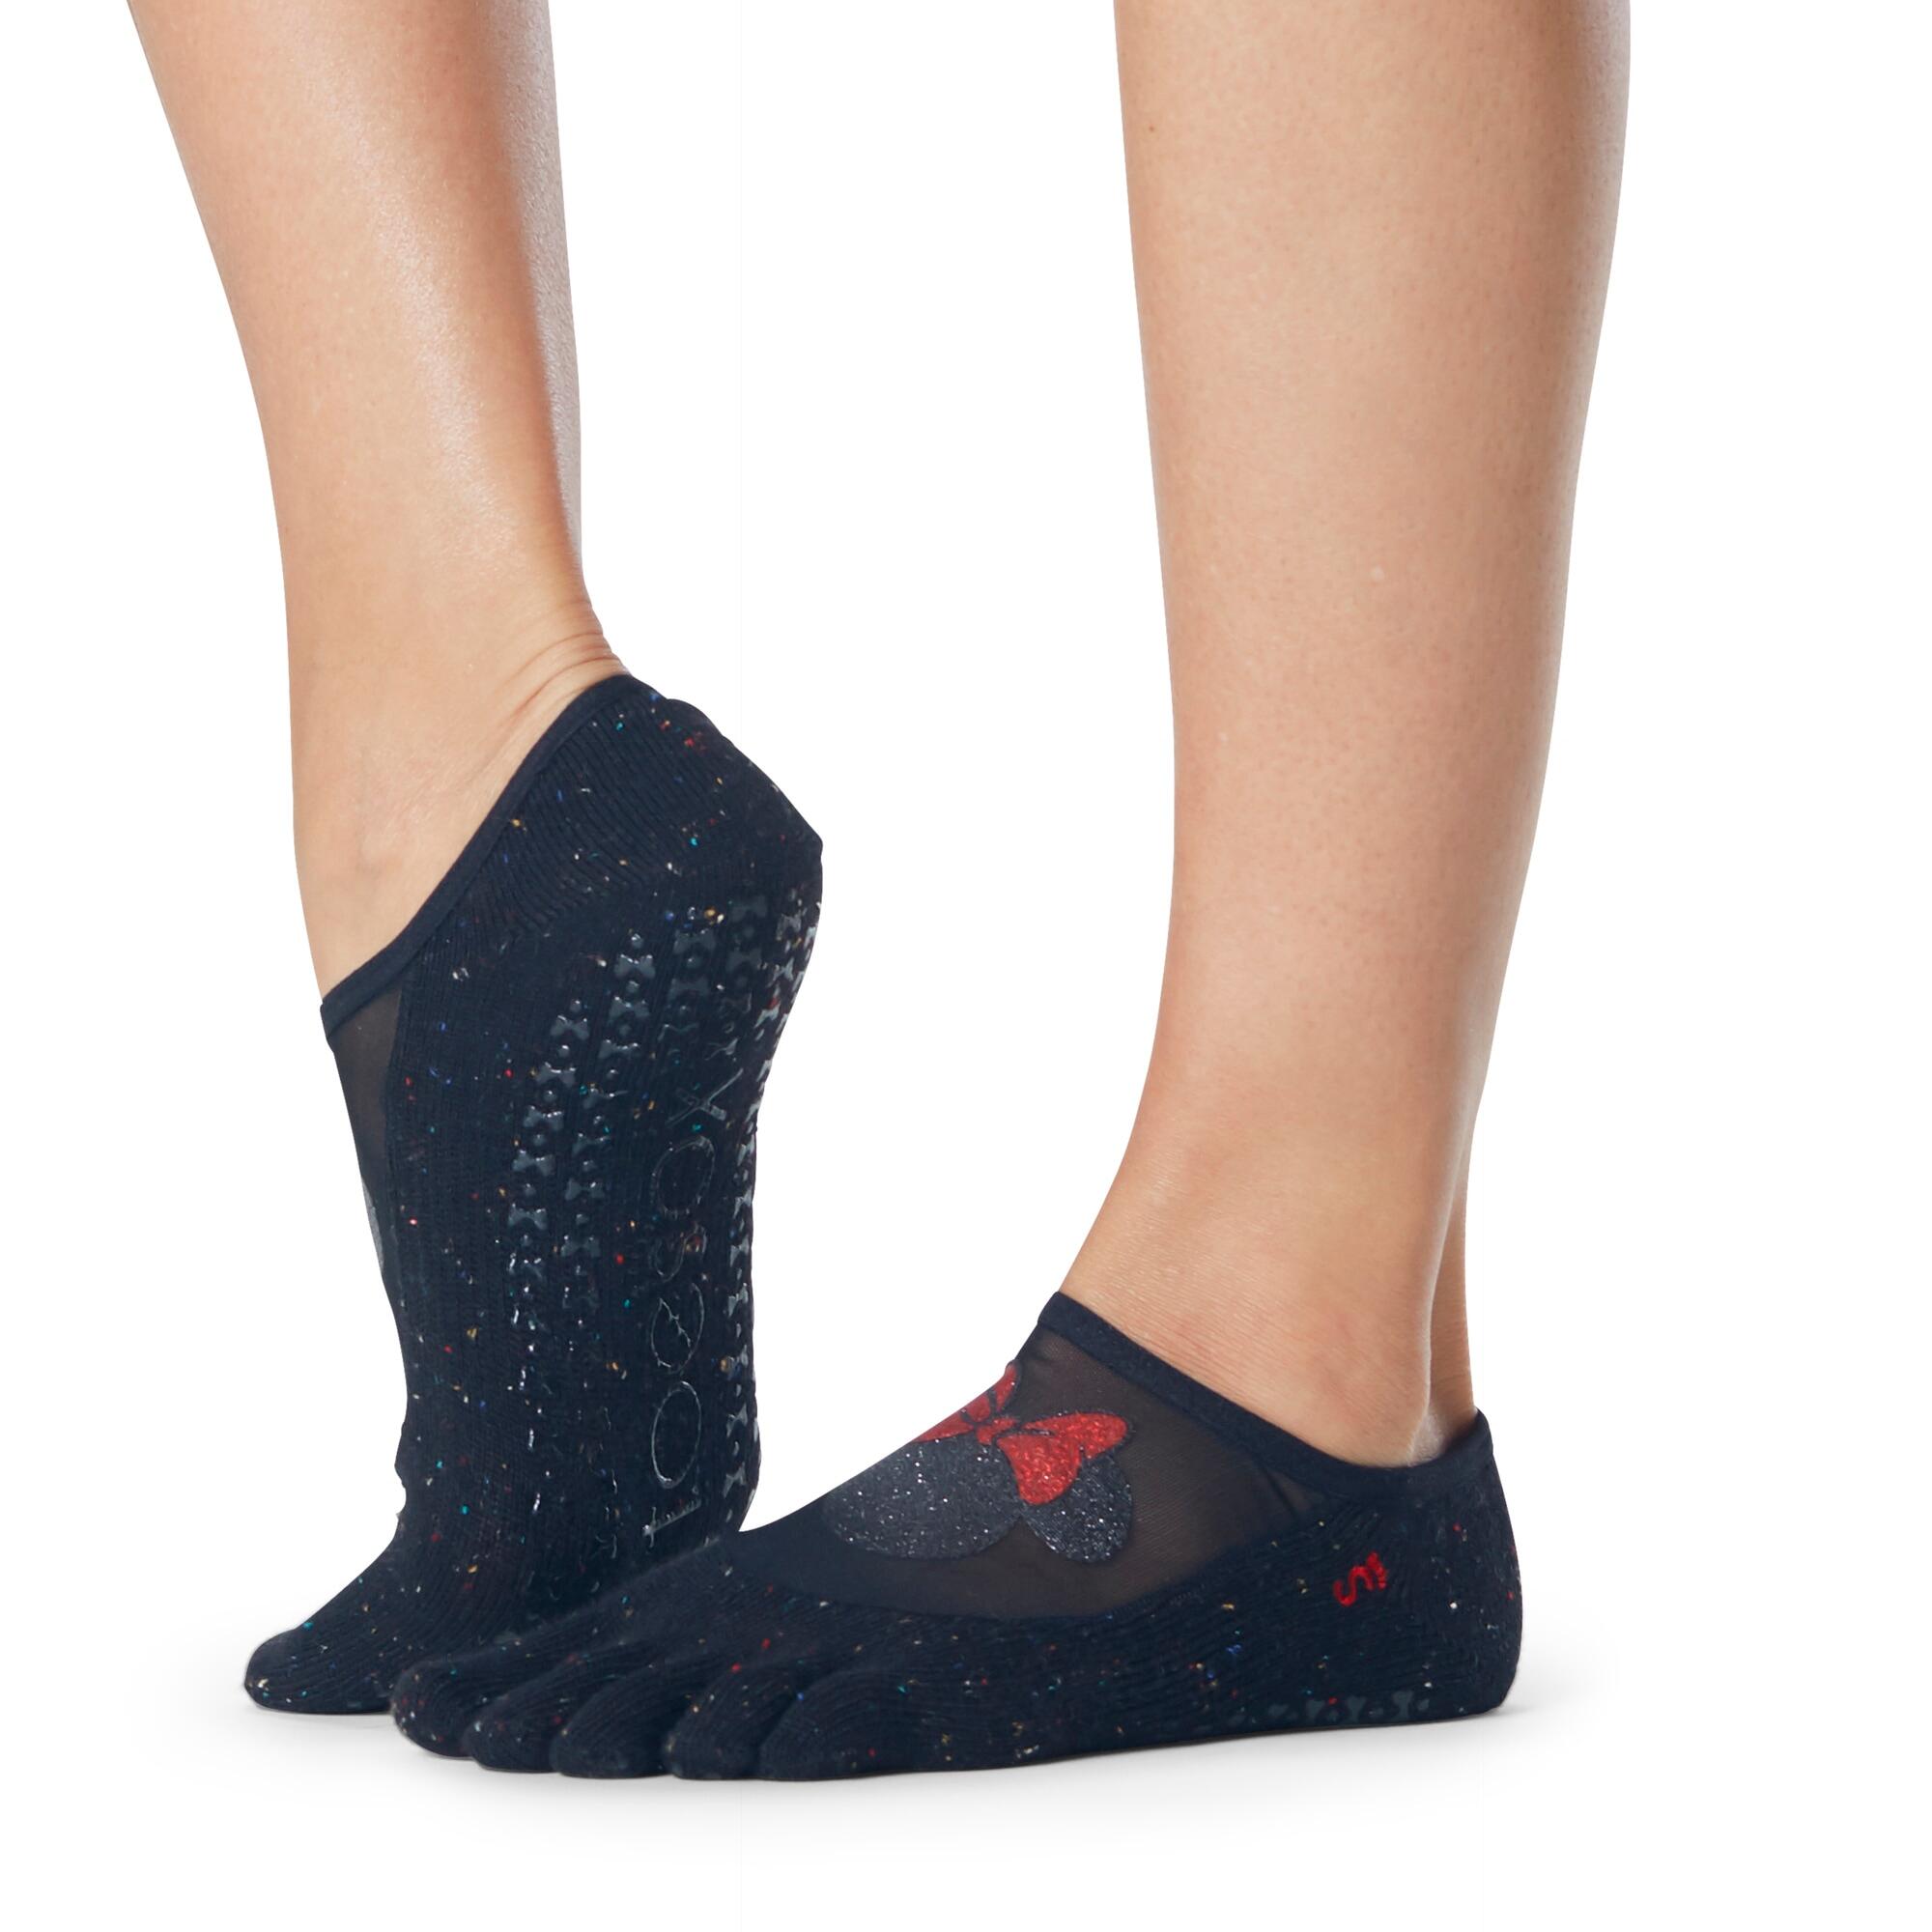 FITNESS-MAD Womens/Ladies Luna Confetti Minnie Mouse Disney Toe Socks (Black/Charcoal